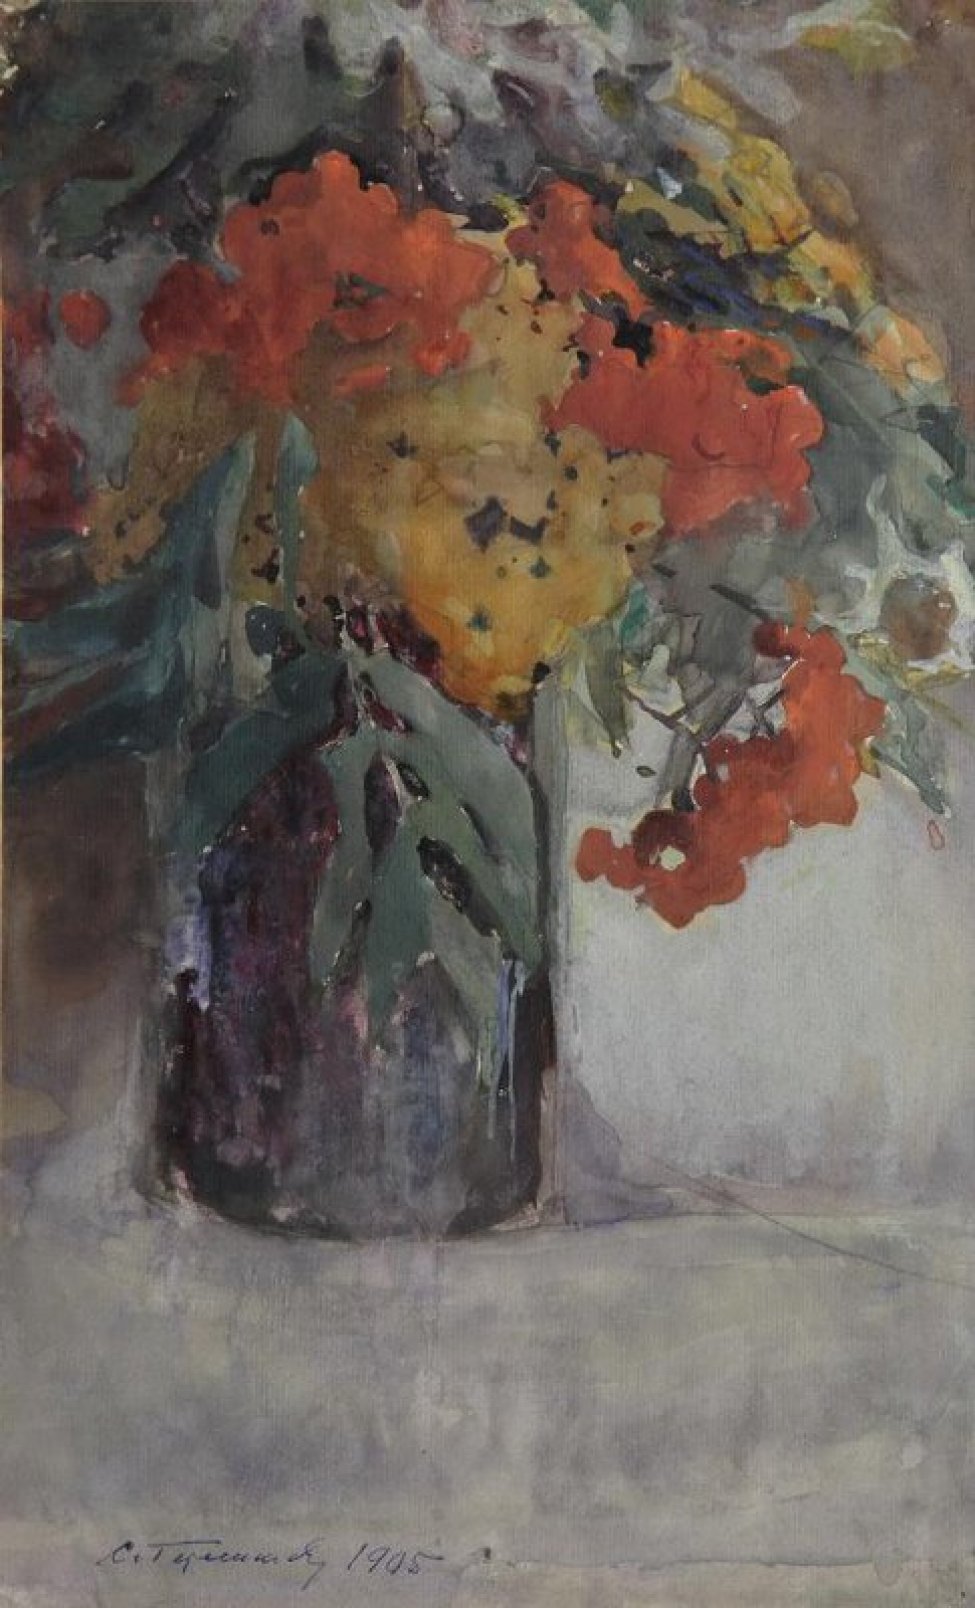 В цилиндрической вазе вишневого цвета изображен букет из веток спелой багряной и оранжевой рябины.
Обрамление: паспарту